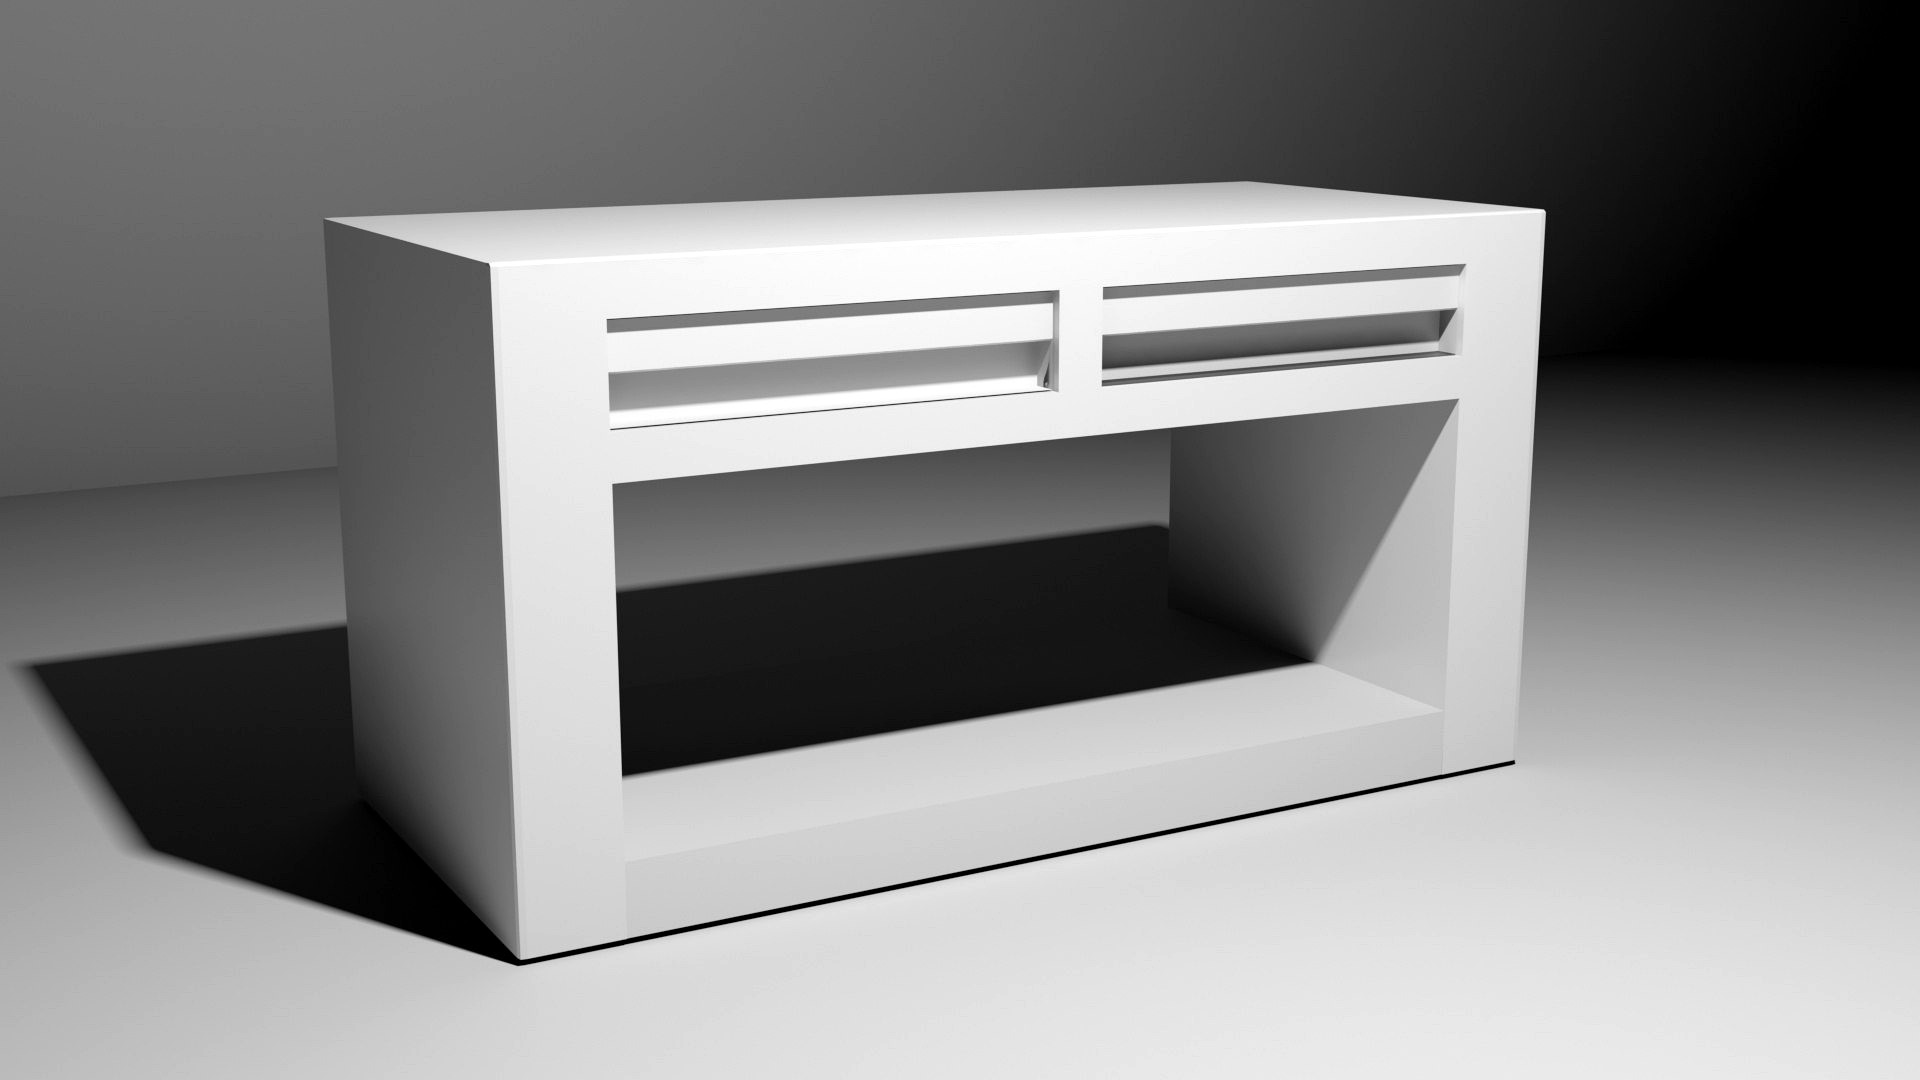 white drawer